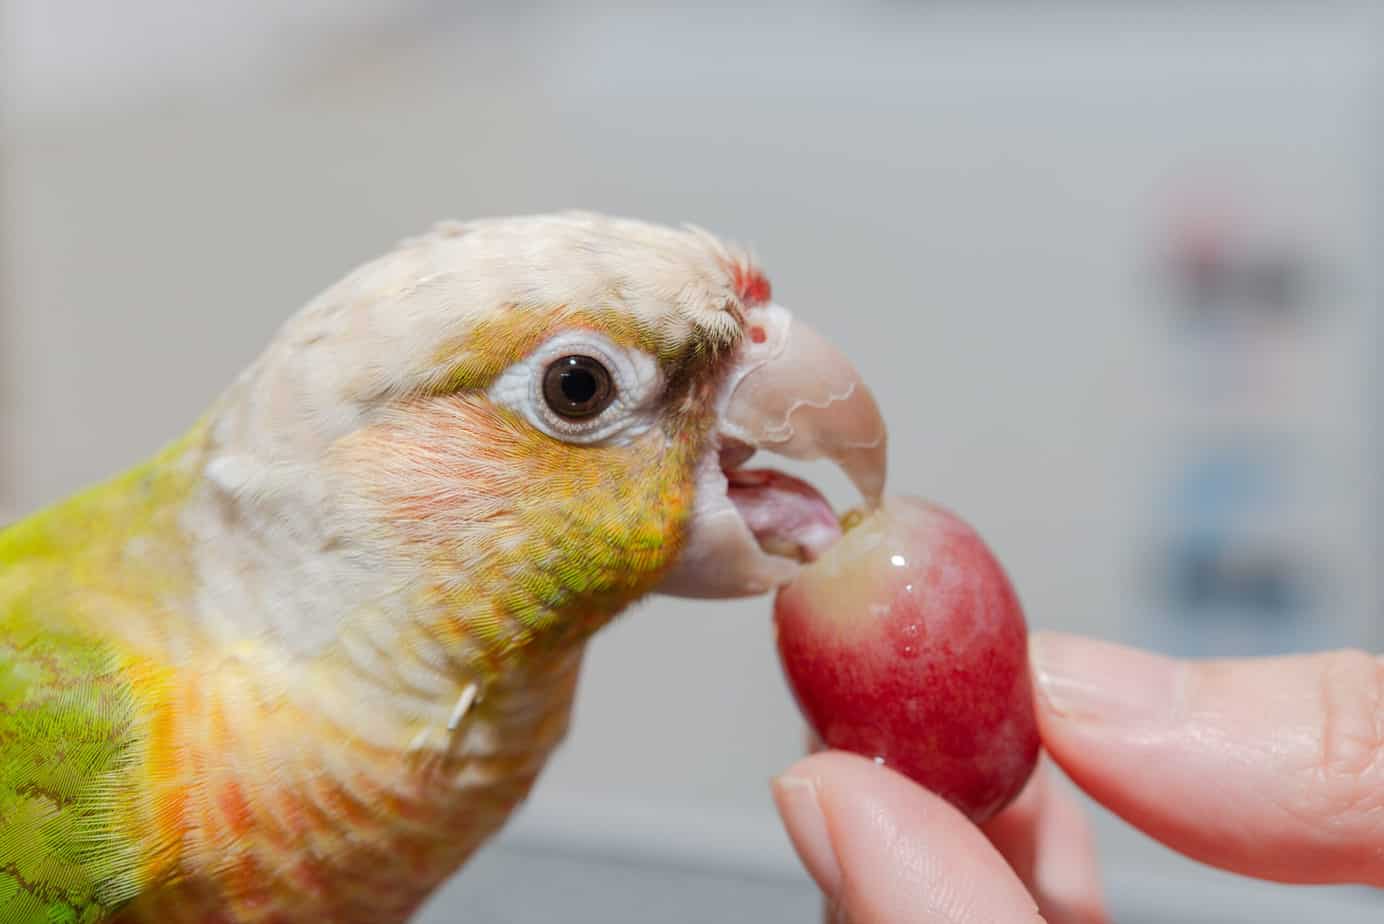 parrots eating a grape